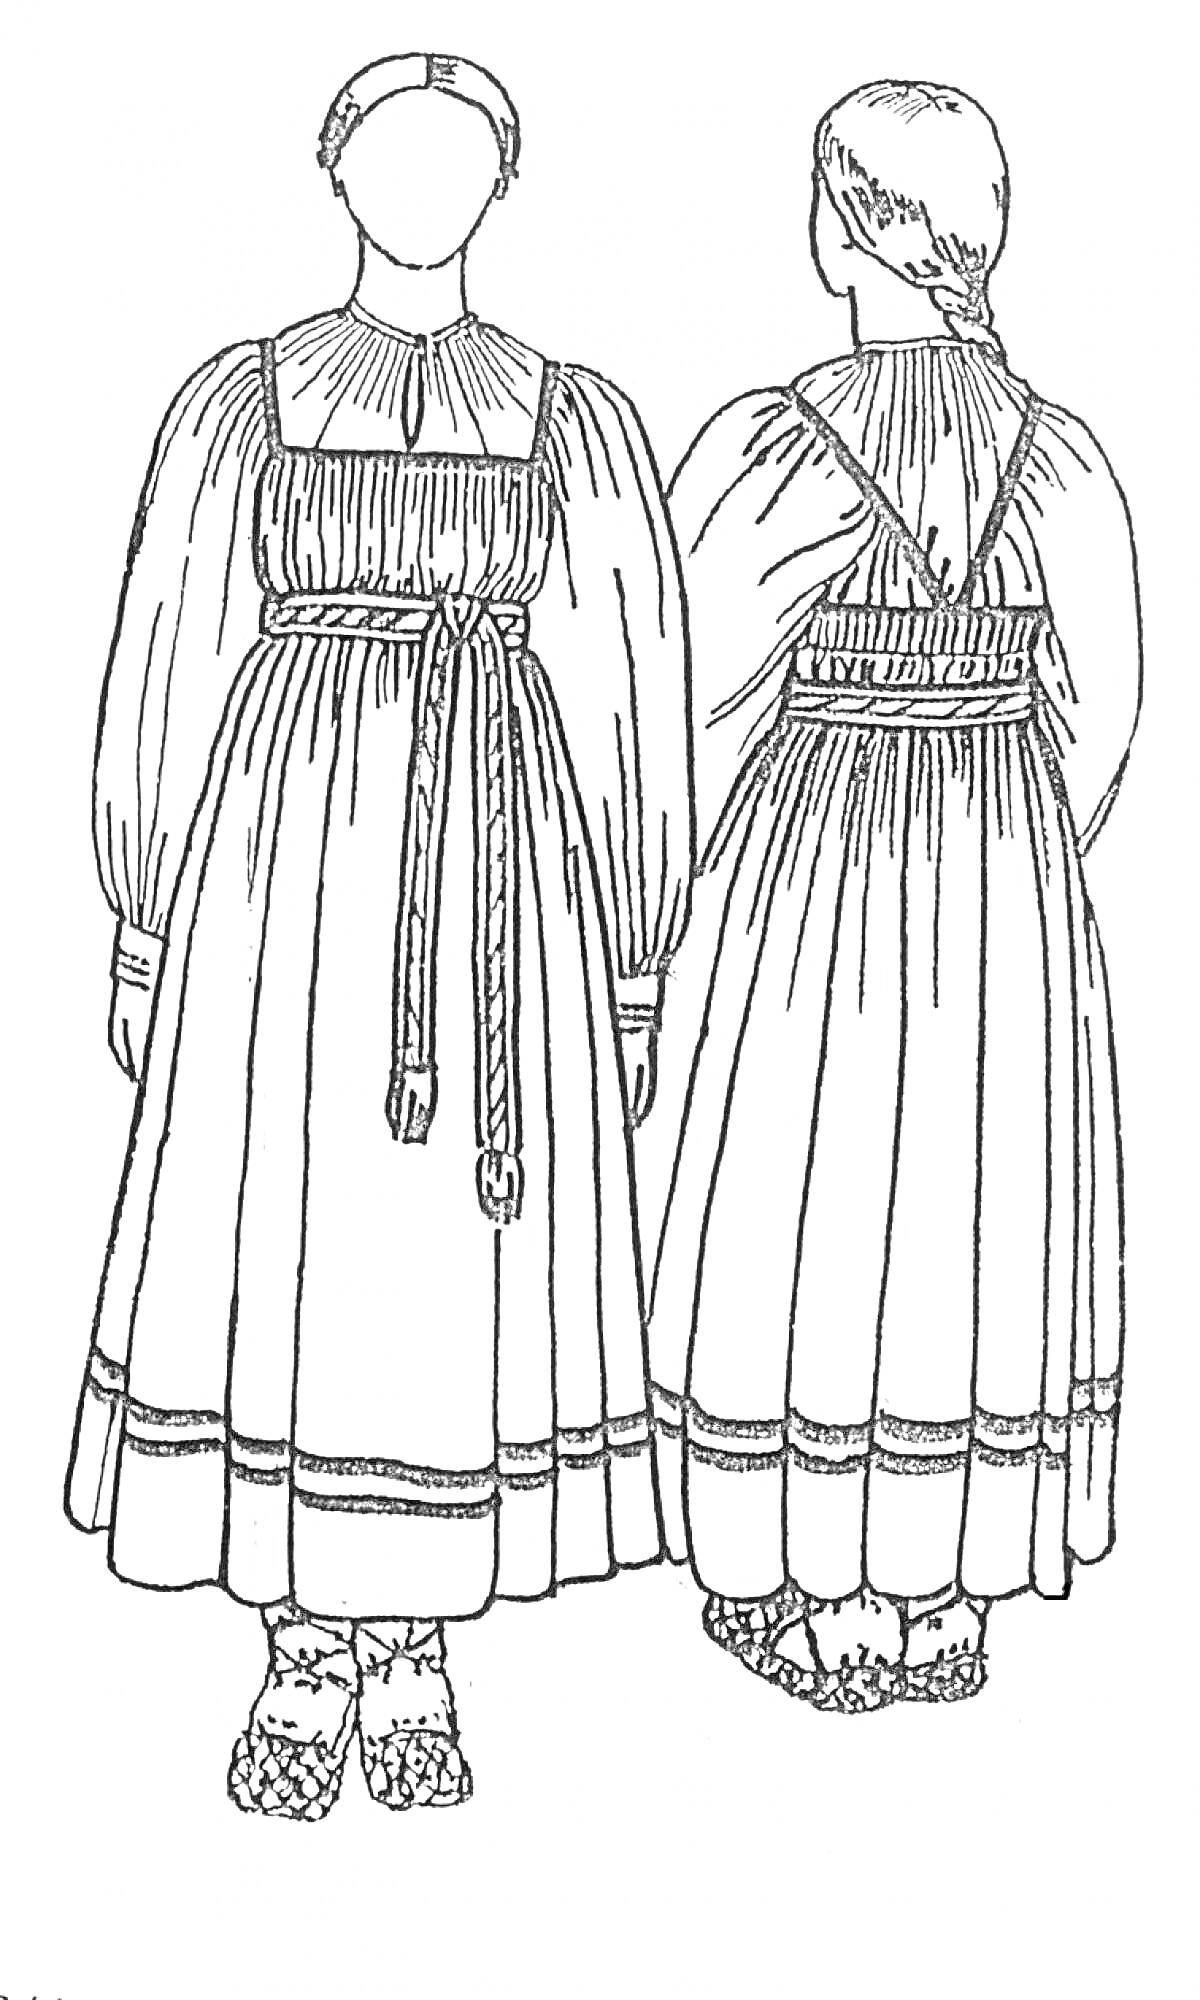 Русский народный женский костюм с сарафаном и рубахой, поясом и головным убором, украшенные орнаментом на подоле.